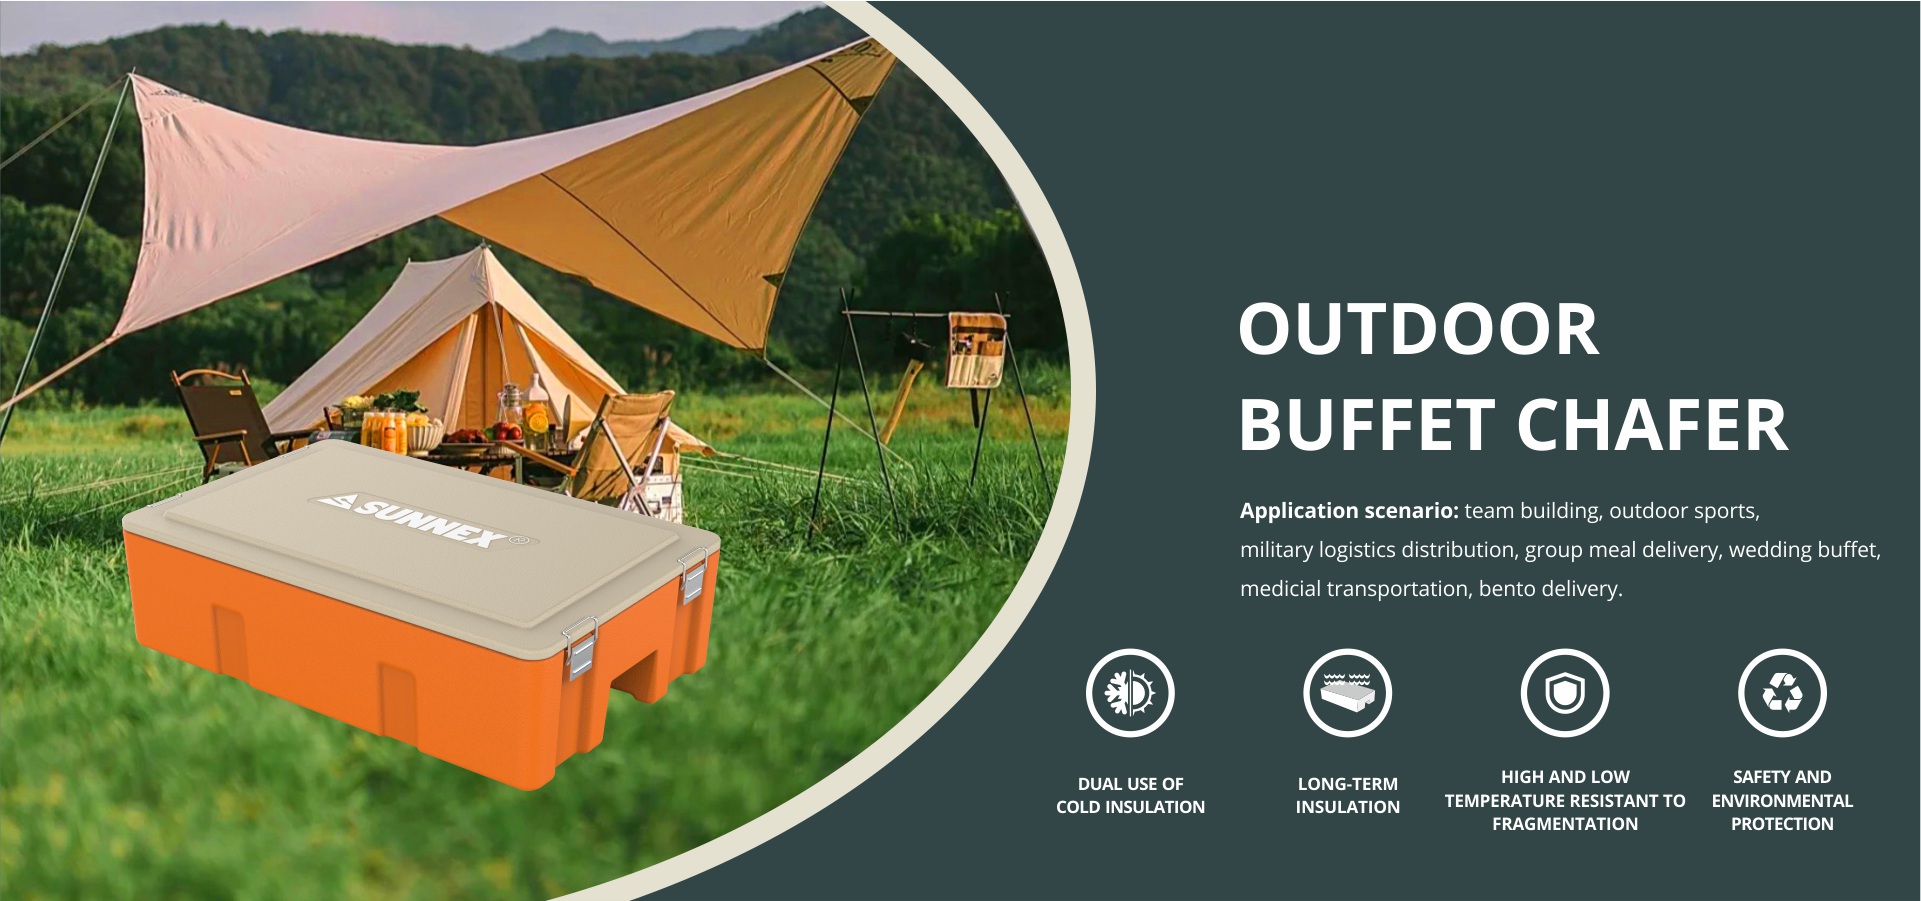 Outdoor Buffet Chafer